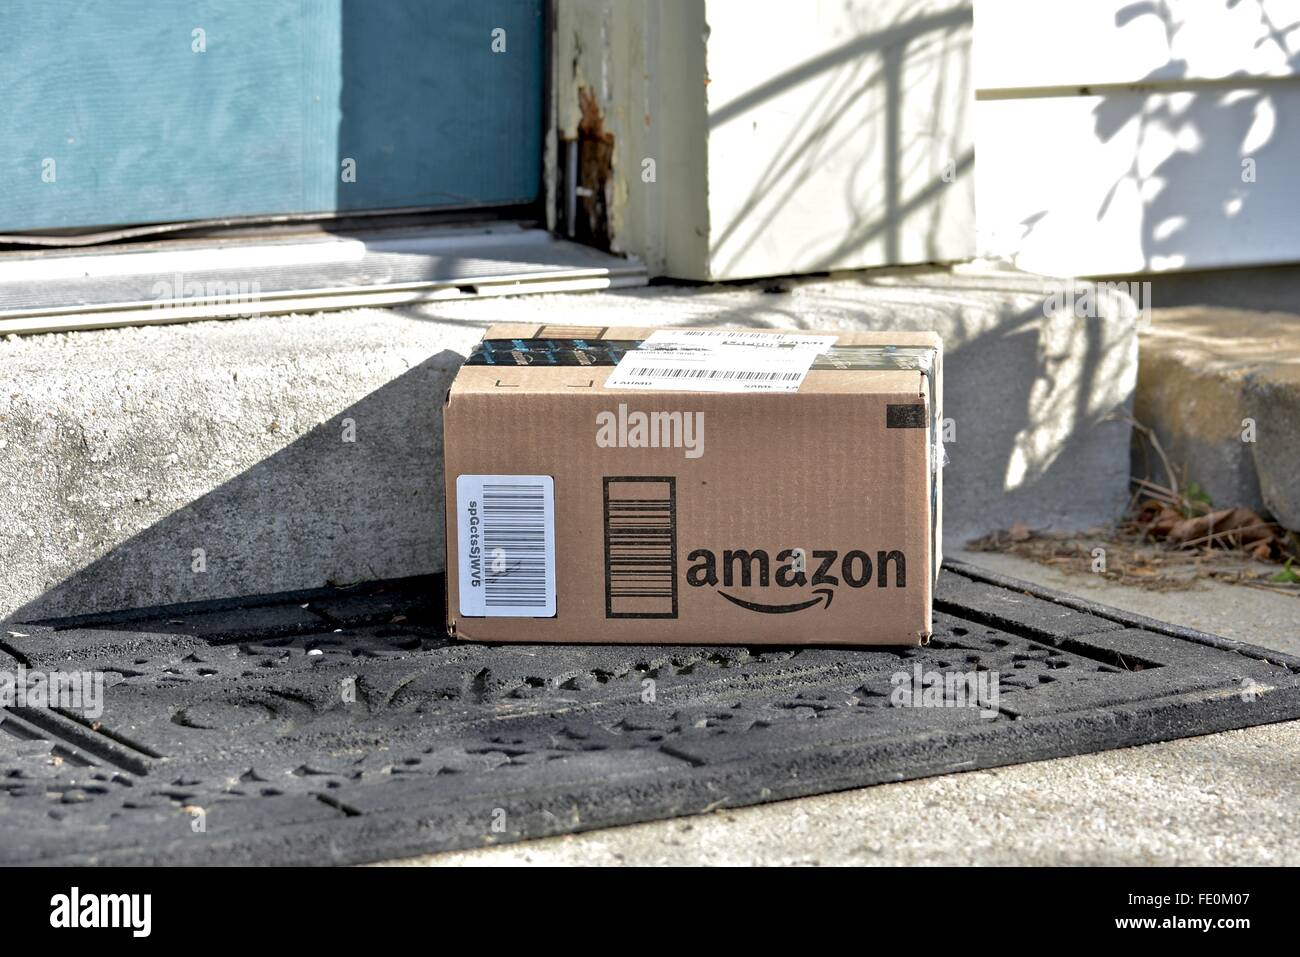 Amazon delivered Banque de photographies et d'images à haute résolution -  Alamy